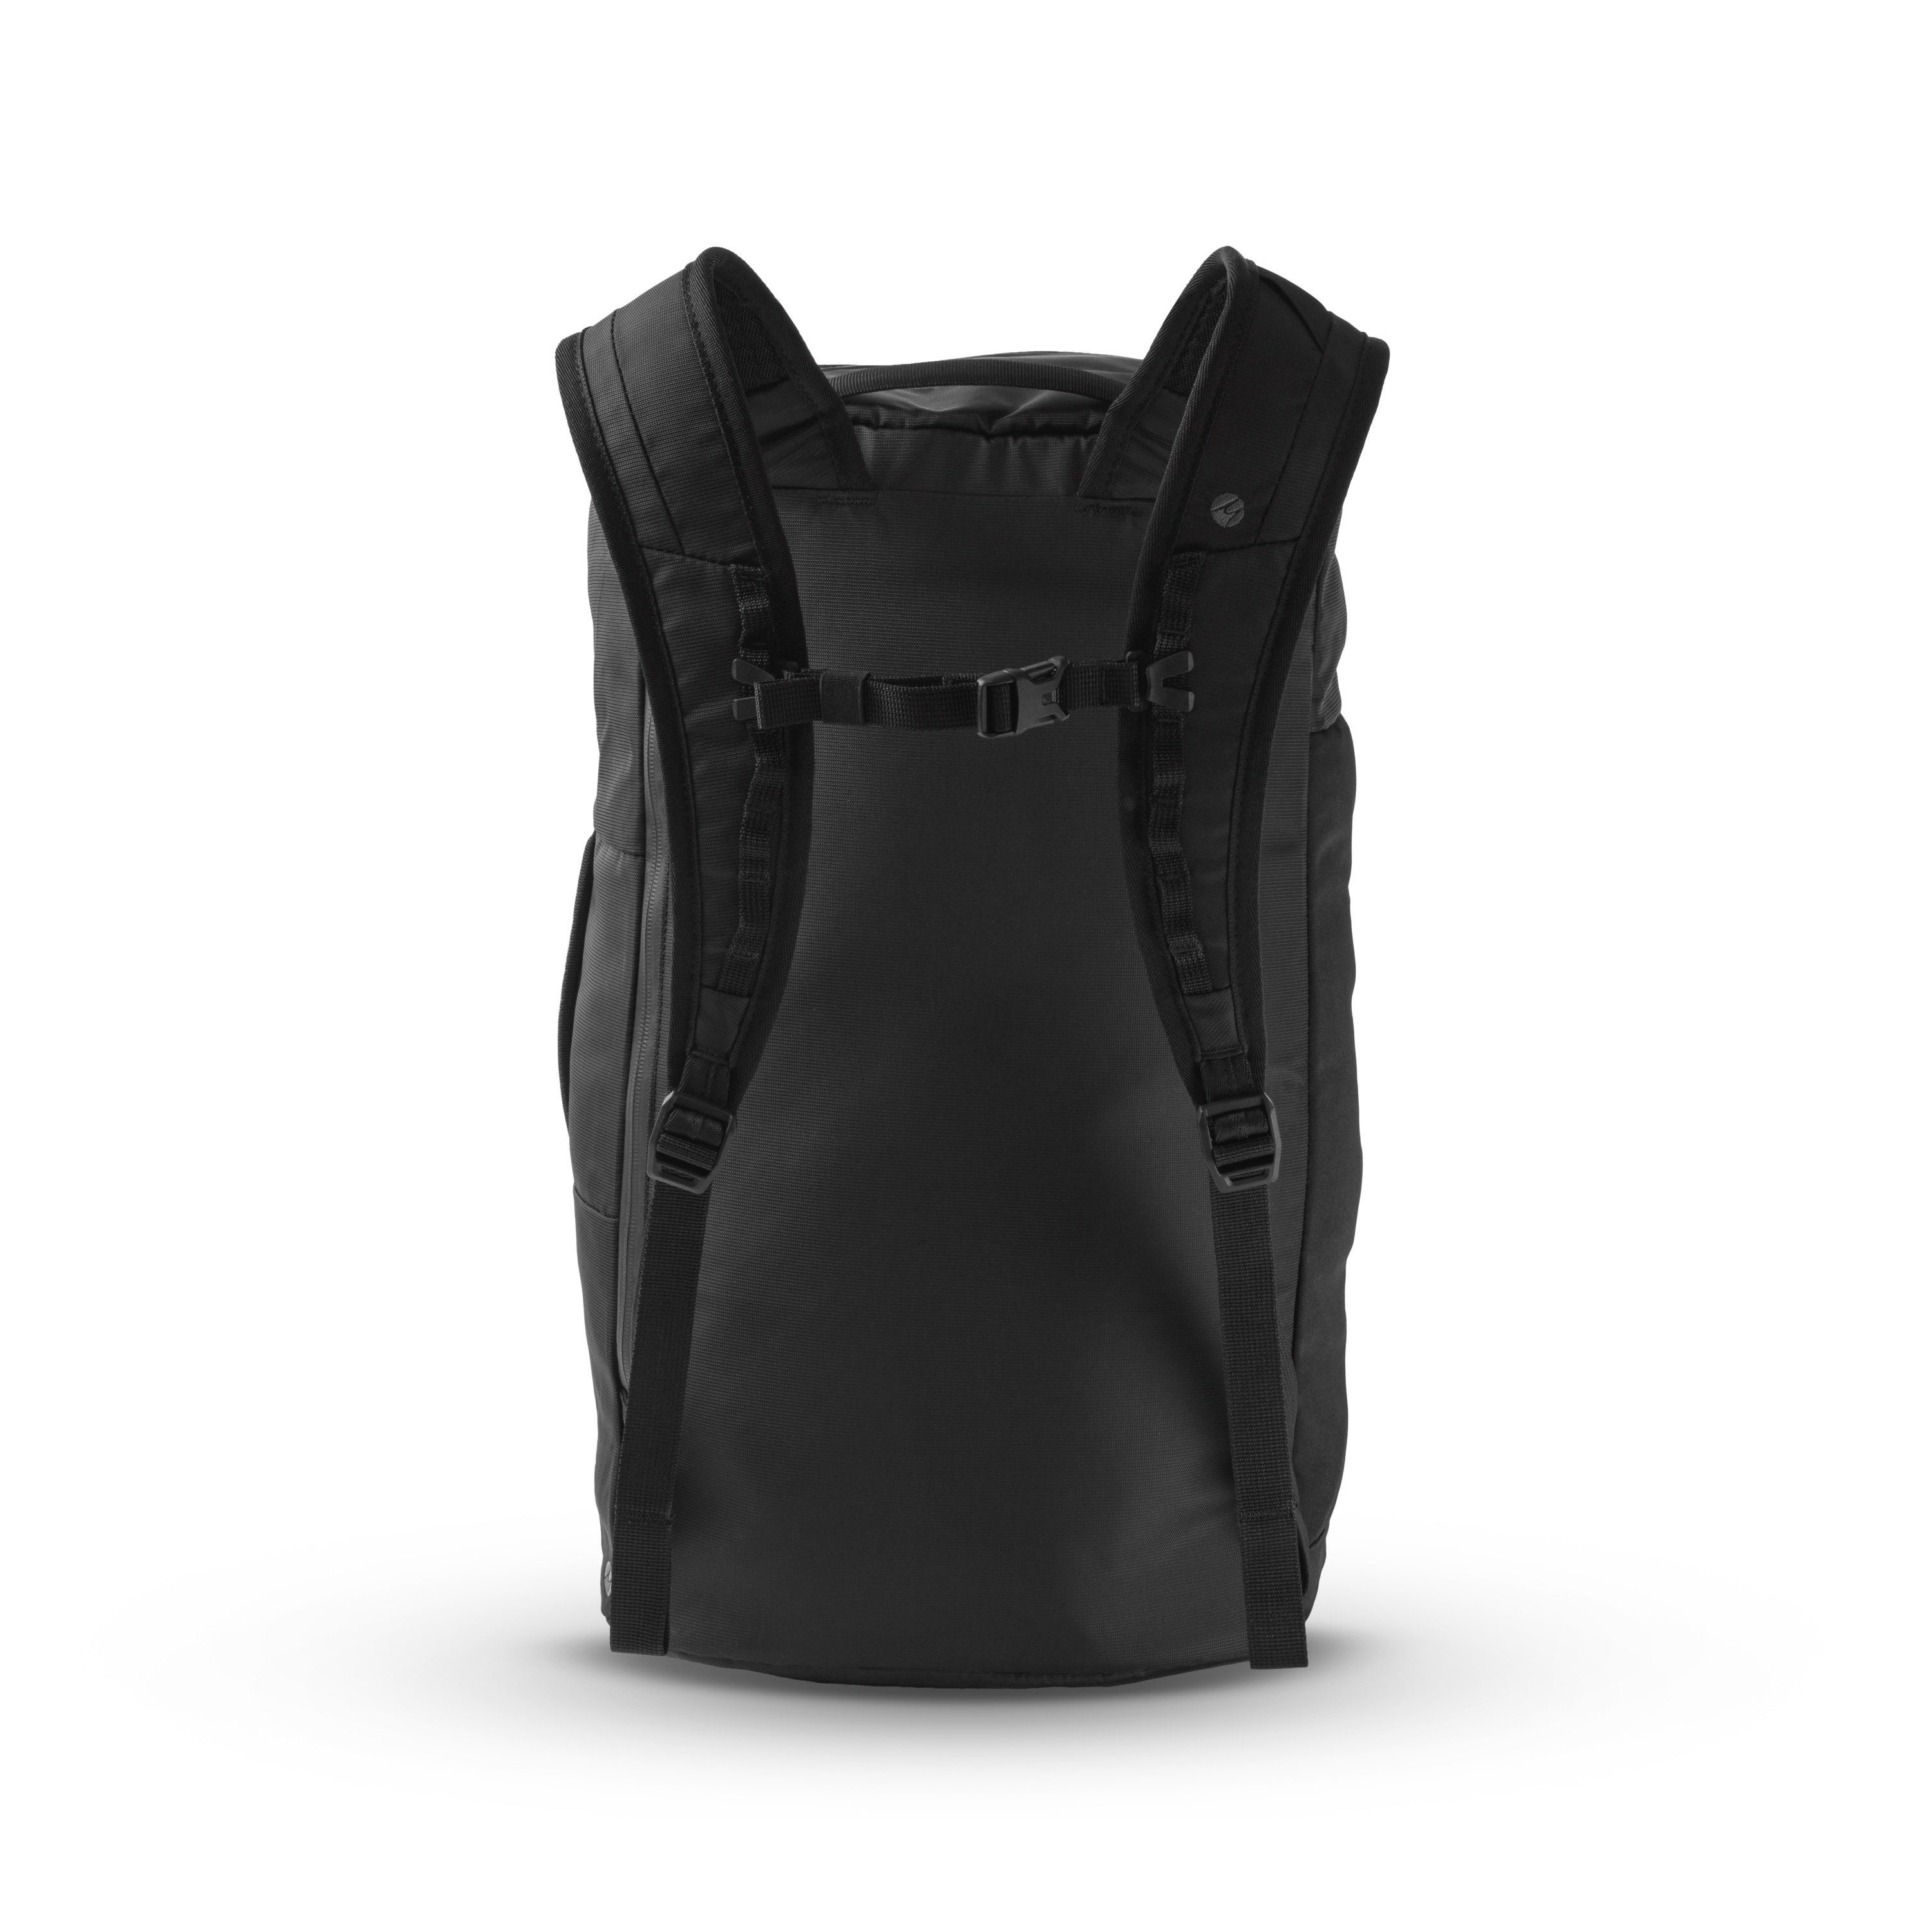 Matador SEG28 Segmented Backpack